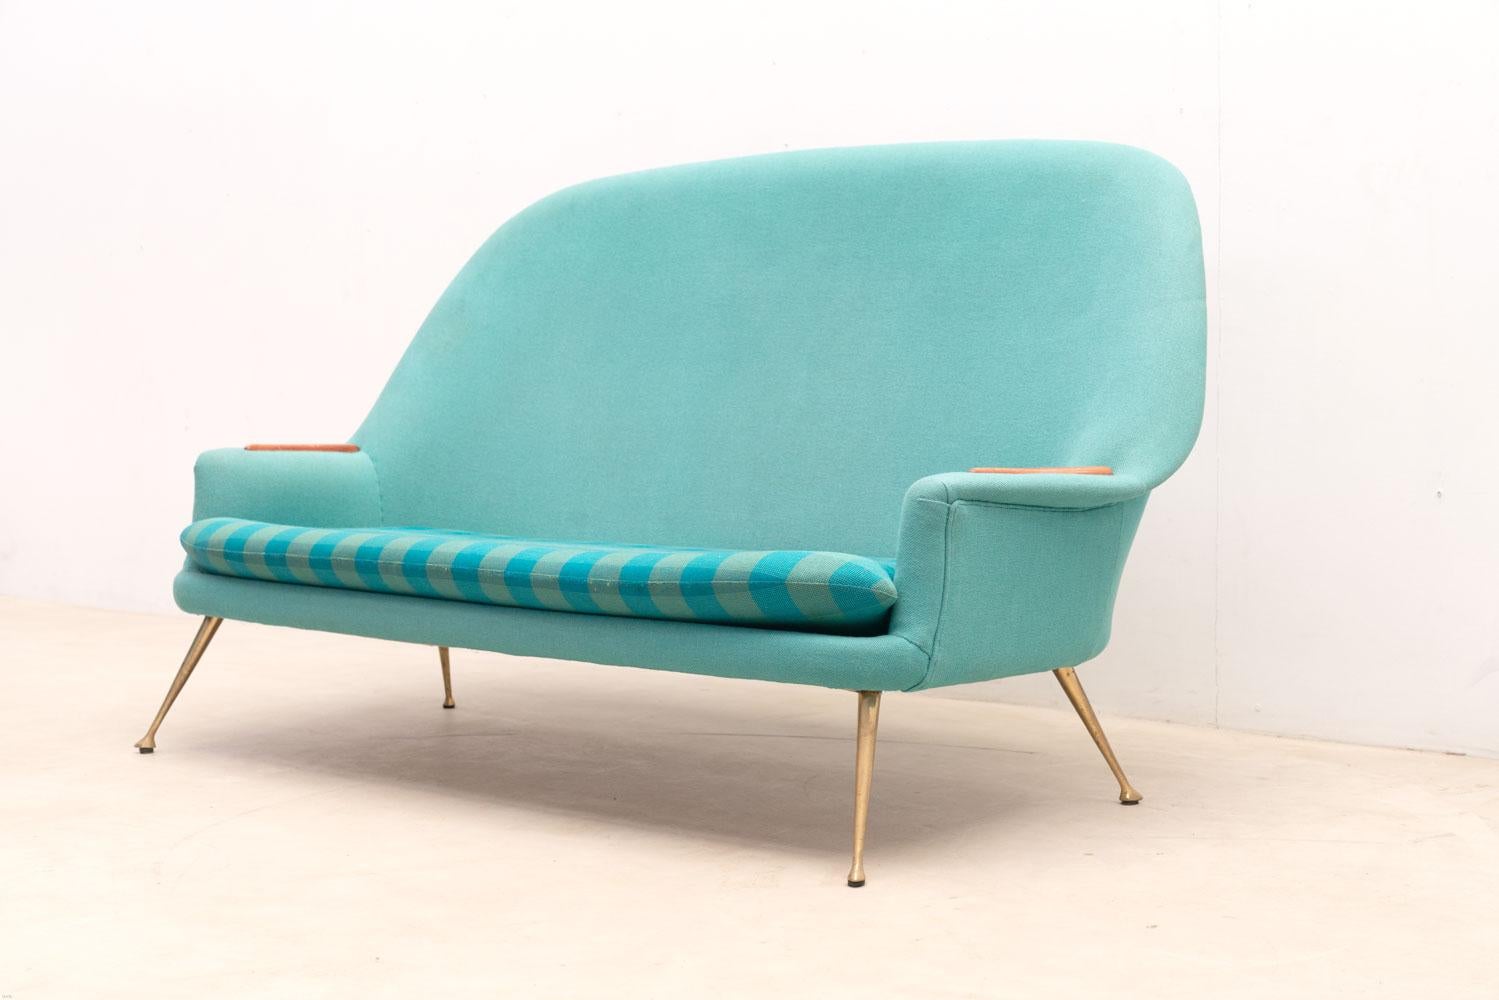 Dieses Sofa verfügt über eine hohe, leicht abgerundete Rückenlehne für mehr Komfort. Dieser Sessel ist mit einem farbenfrohen Stoff gepolstert und setzt einen farblichen Akzent. Die eleganten Messingbeine strahlen Eleganz aus, während die hölzernen